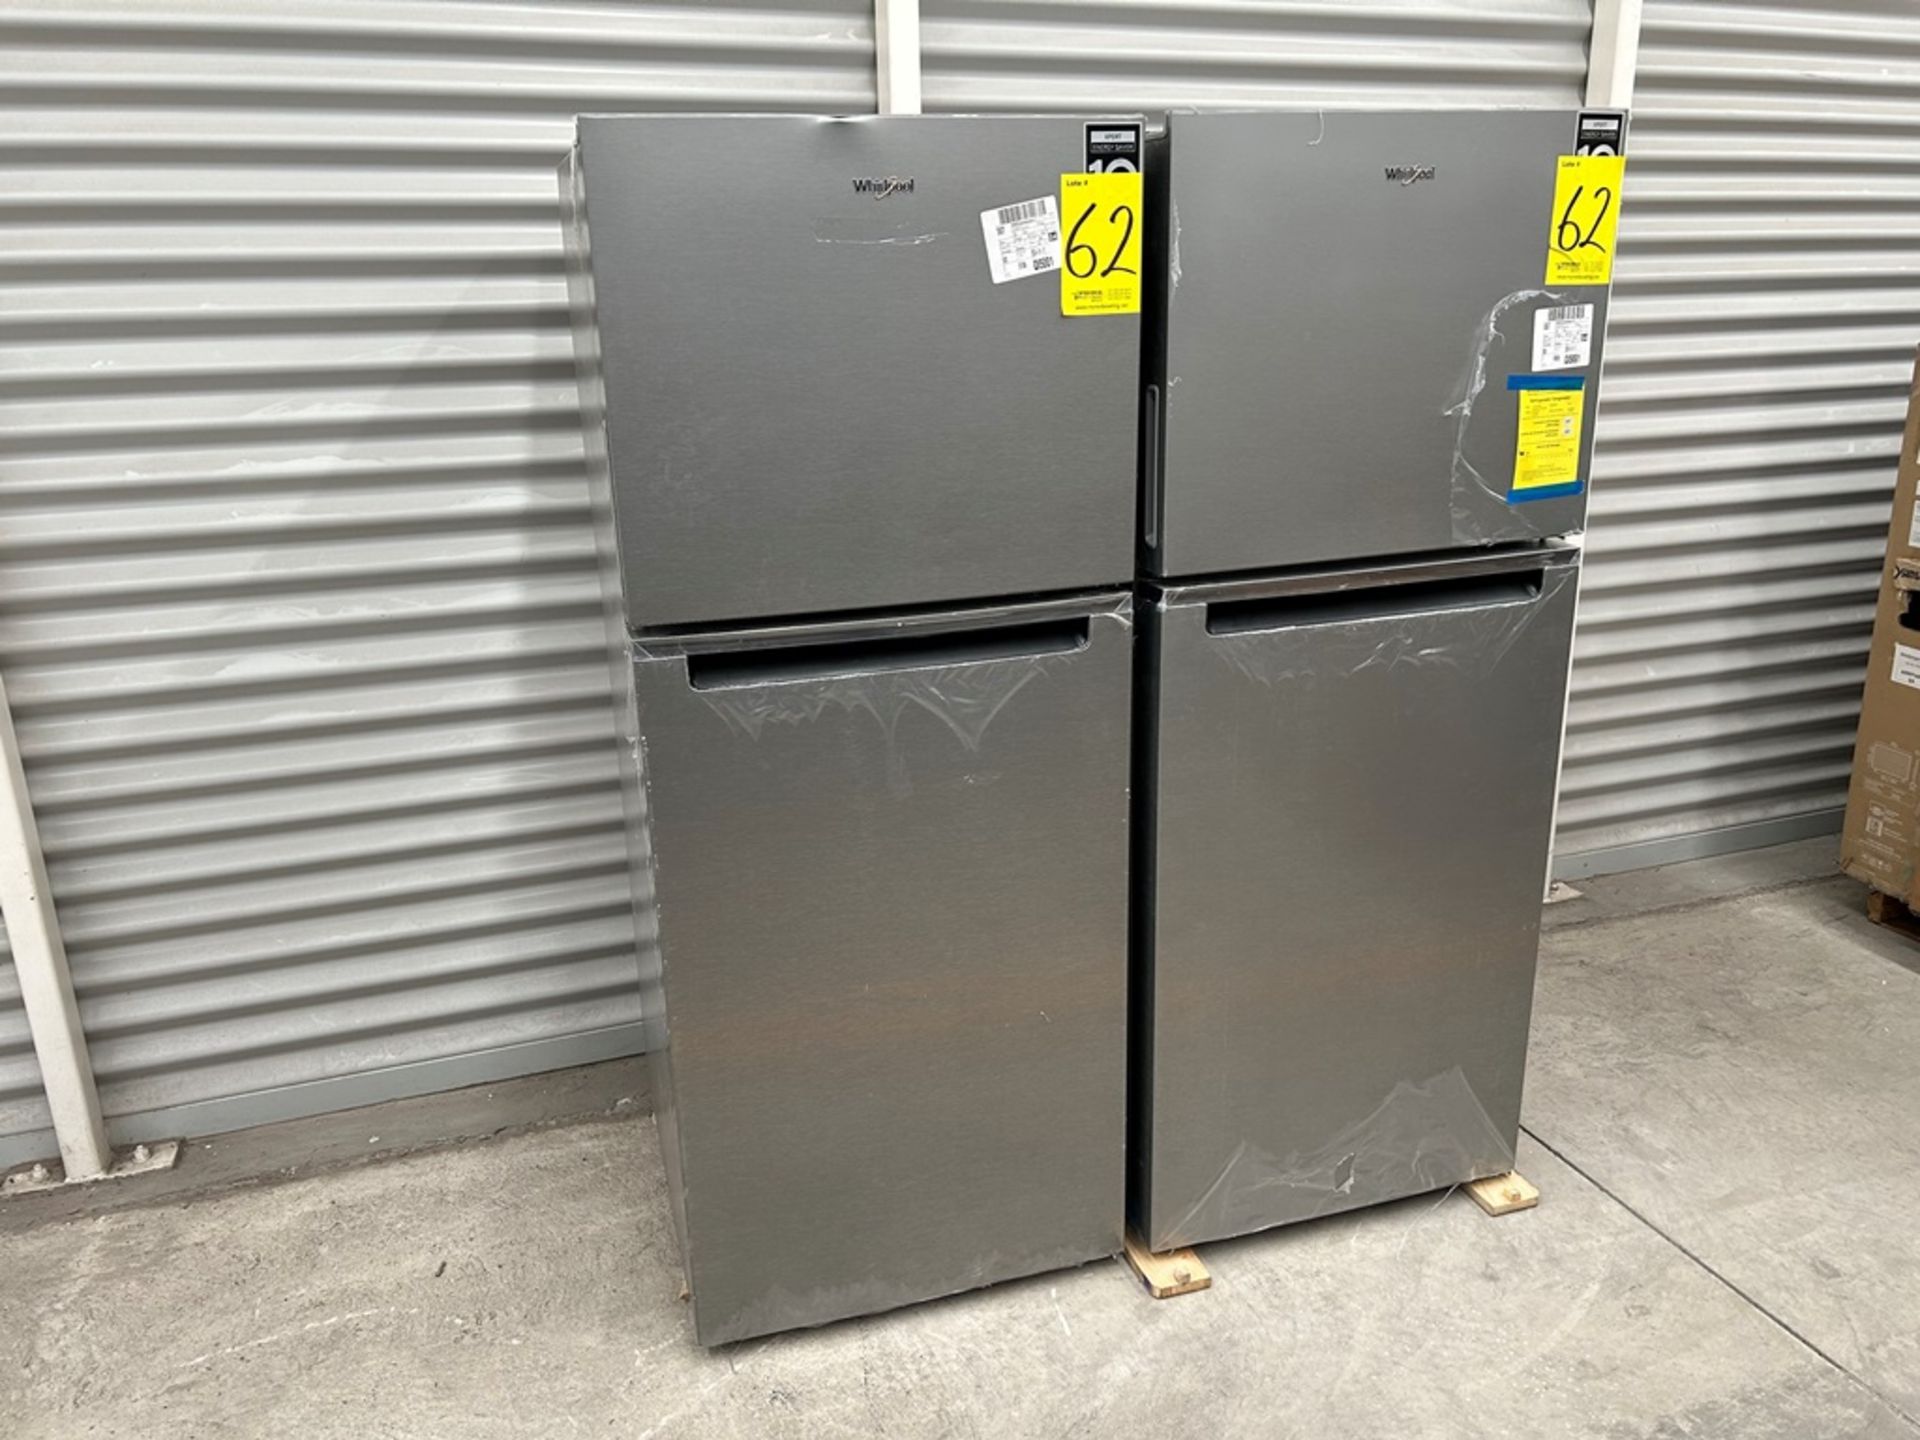 Lote de 2 refrigeradores contiene: 1 Refrigerador Marca WHIRPOOL, Modelo WT1230K, Serie 91306, Colo - Image 3 of 17